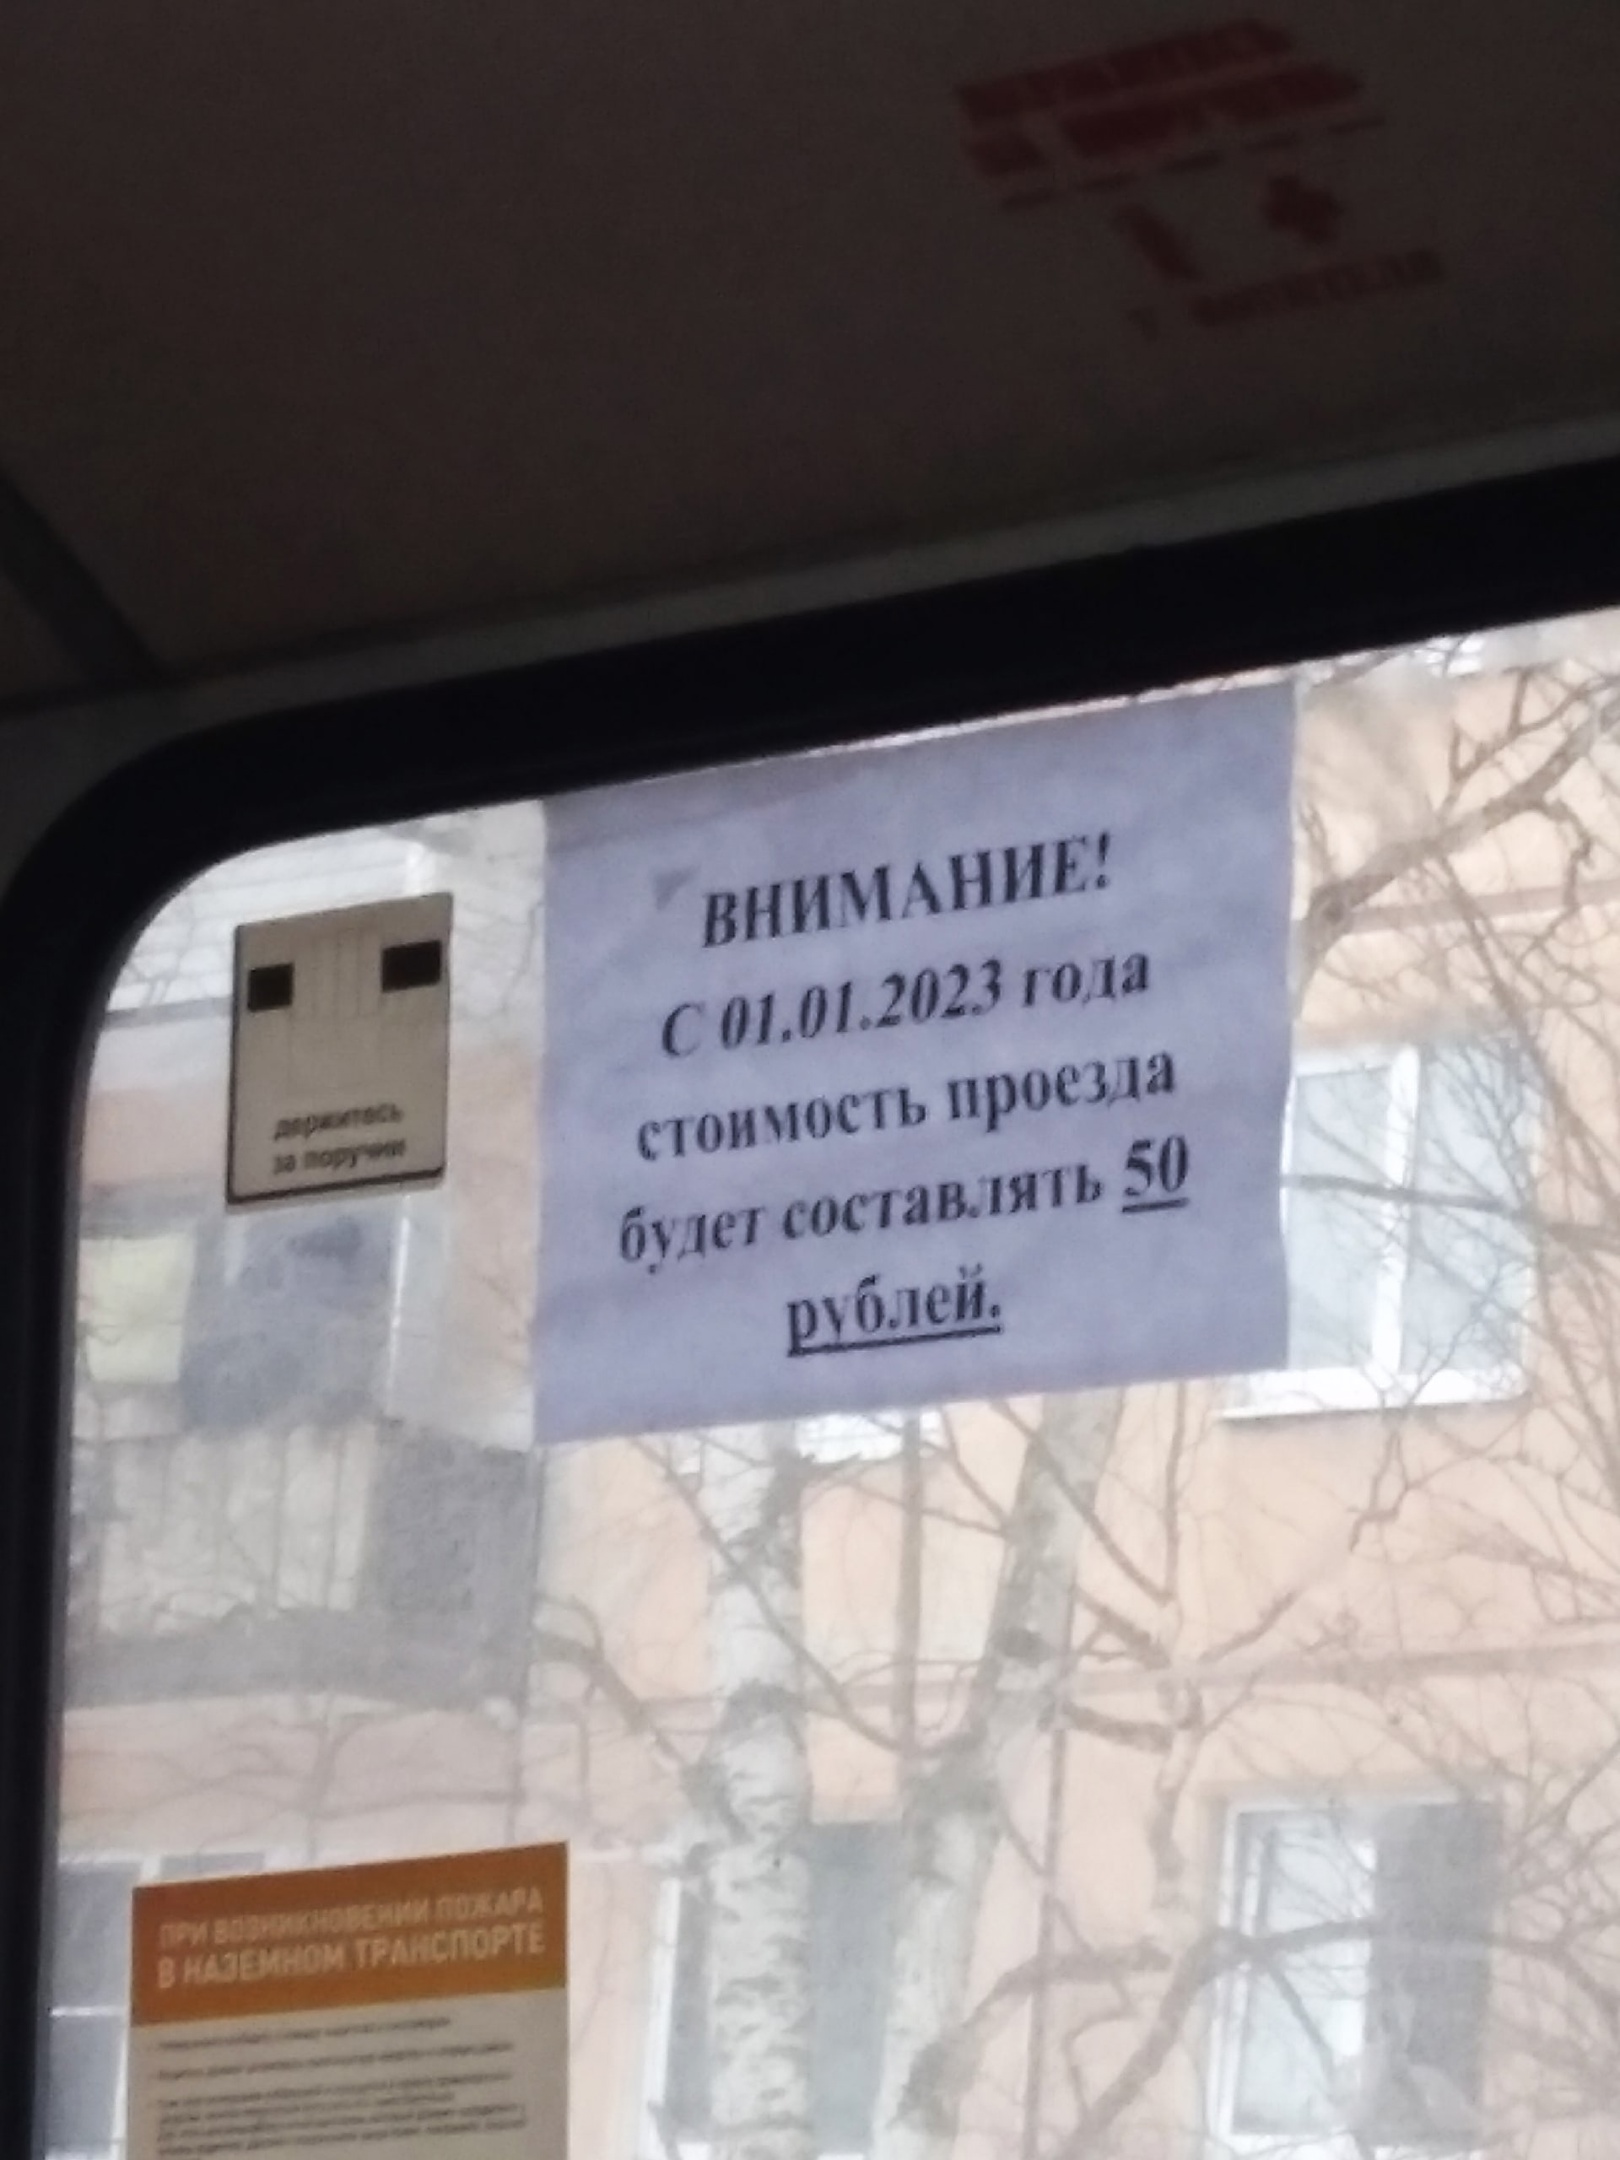 Жители Петрозаводска предлагают игнорировать маршрутки после повышения цен до 50 рублей